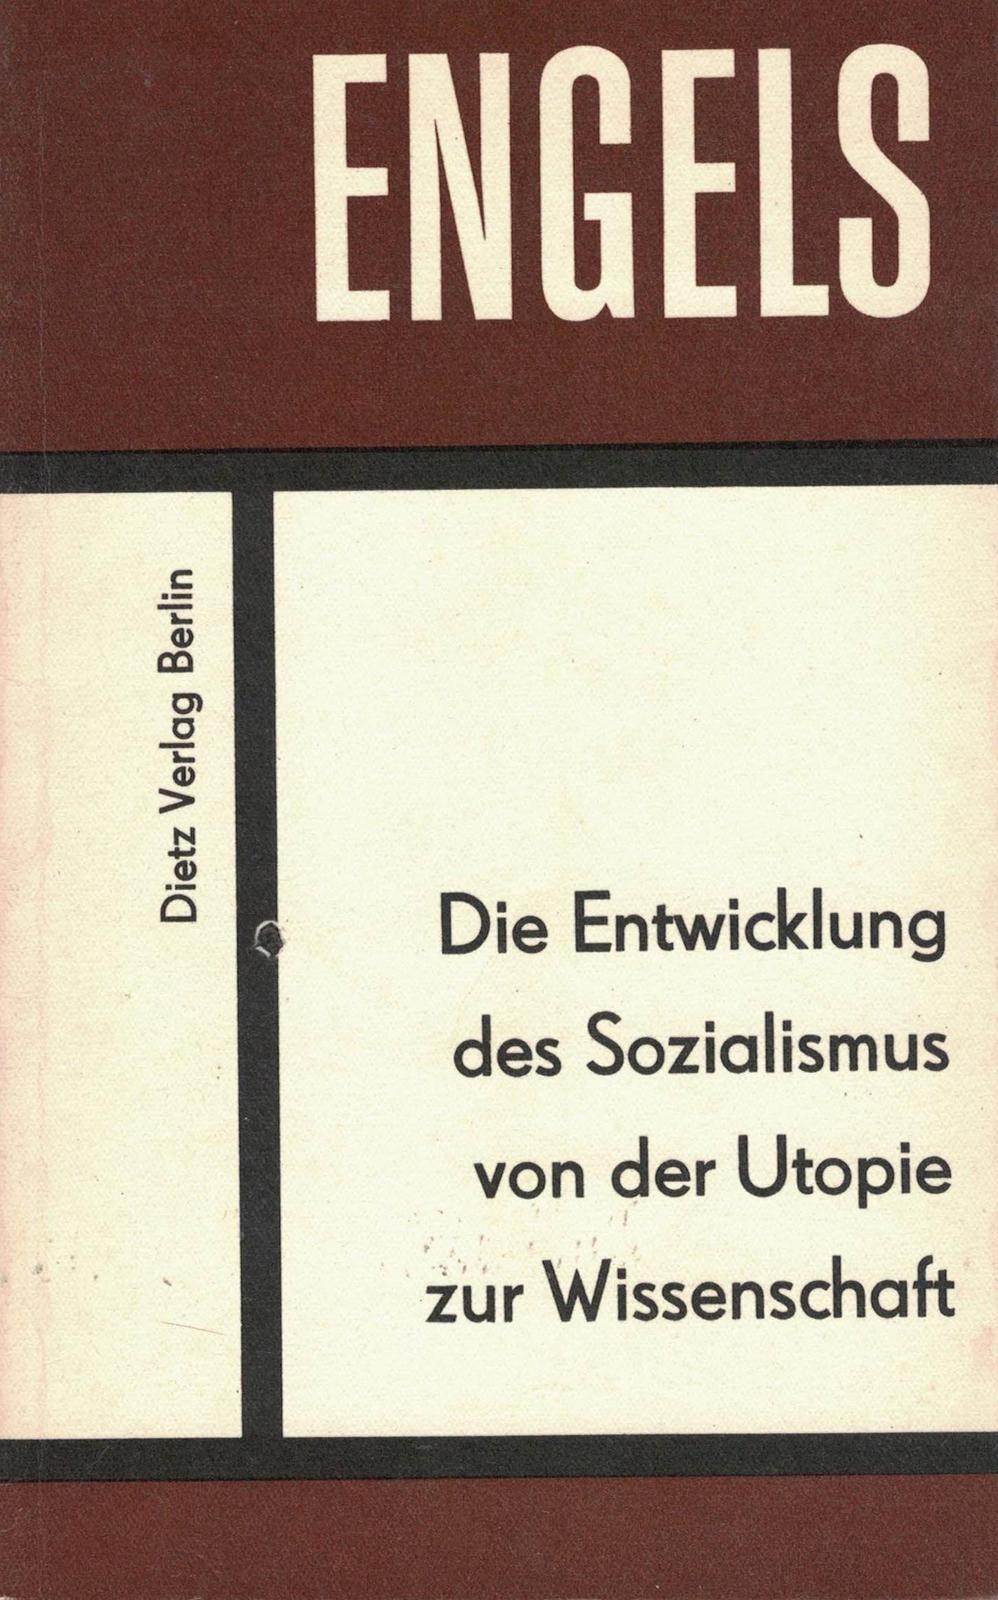 Friedrich Engels: Die Entwicklung des Sozialismus von der Utopie zur Wissenschaft (German language, 1969, Karl Dietz Verlag Berlin)